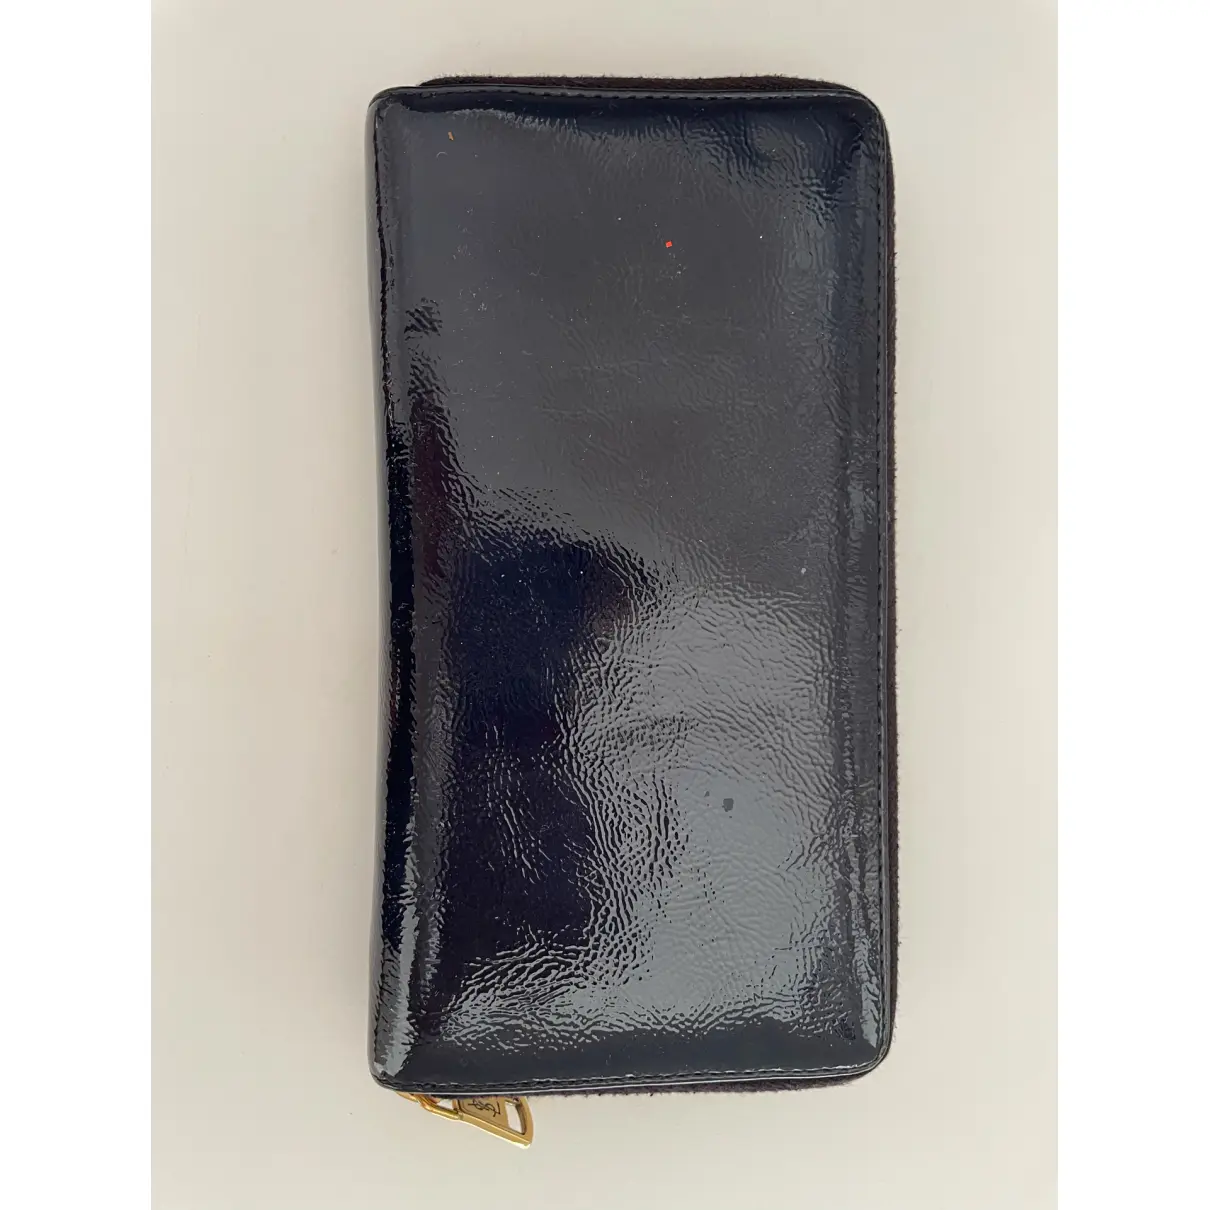 Buy Yves Saint Laurent Belle de Jour patent leather wallet online